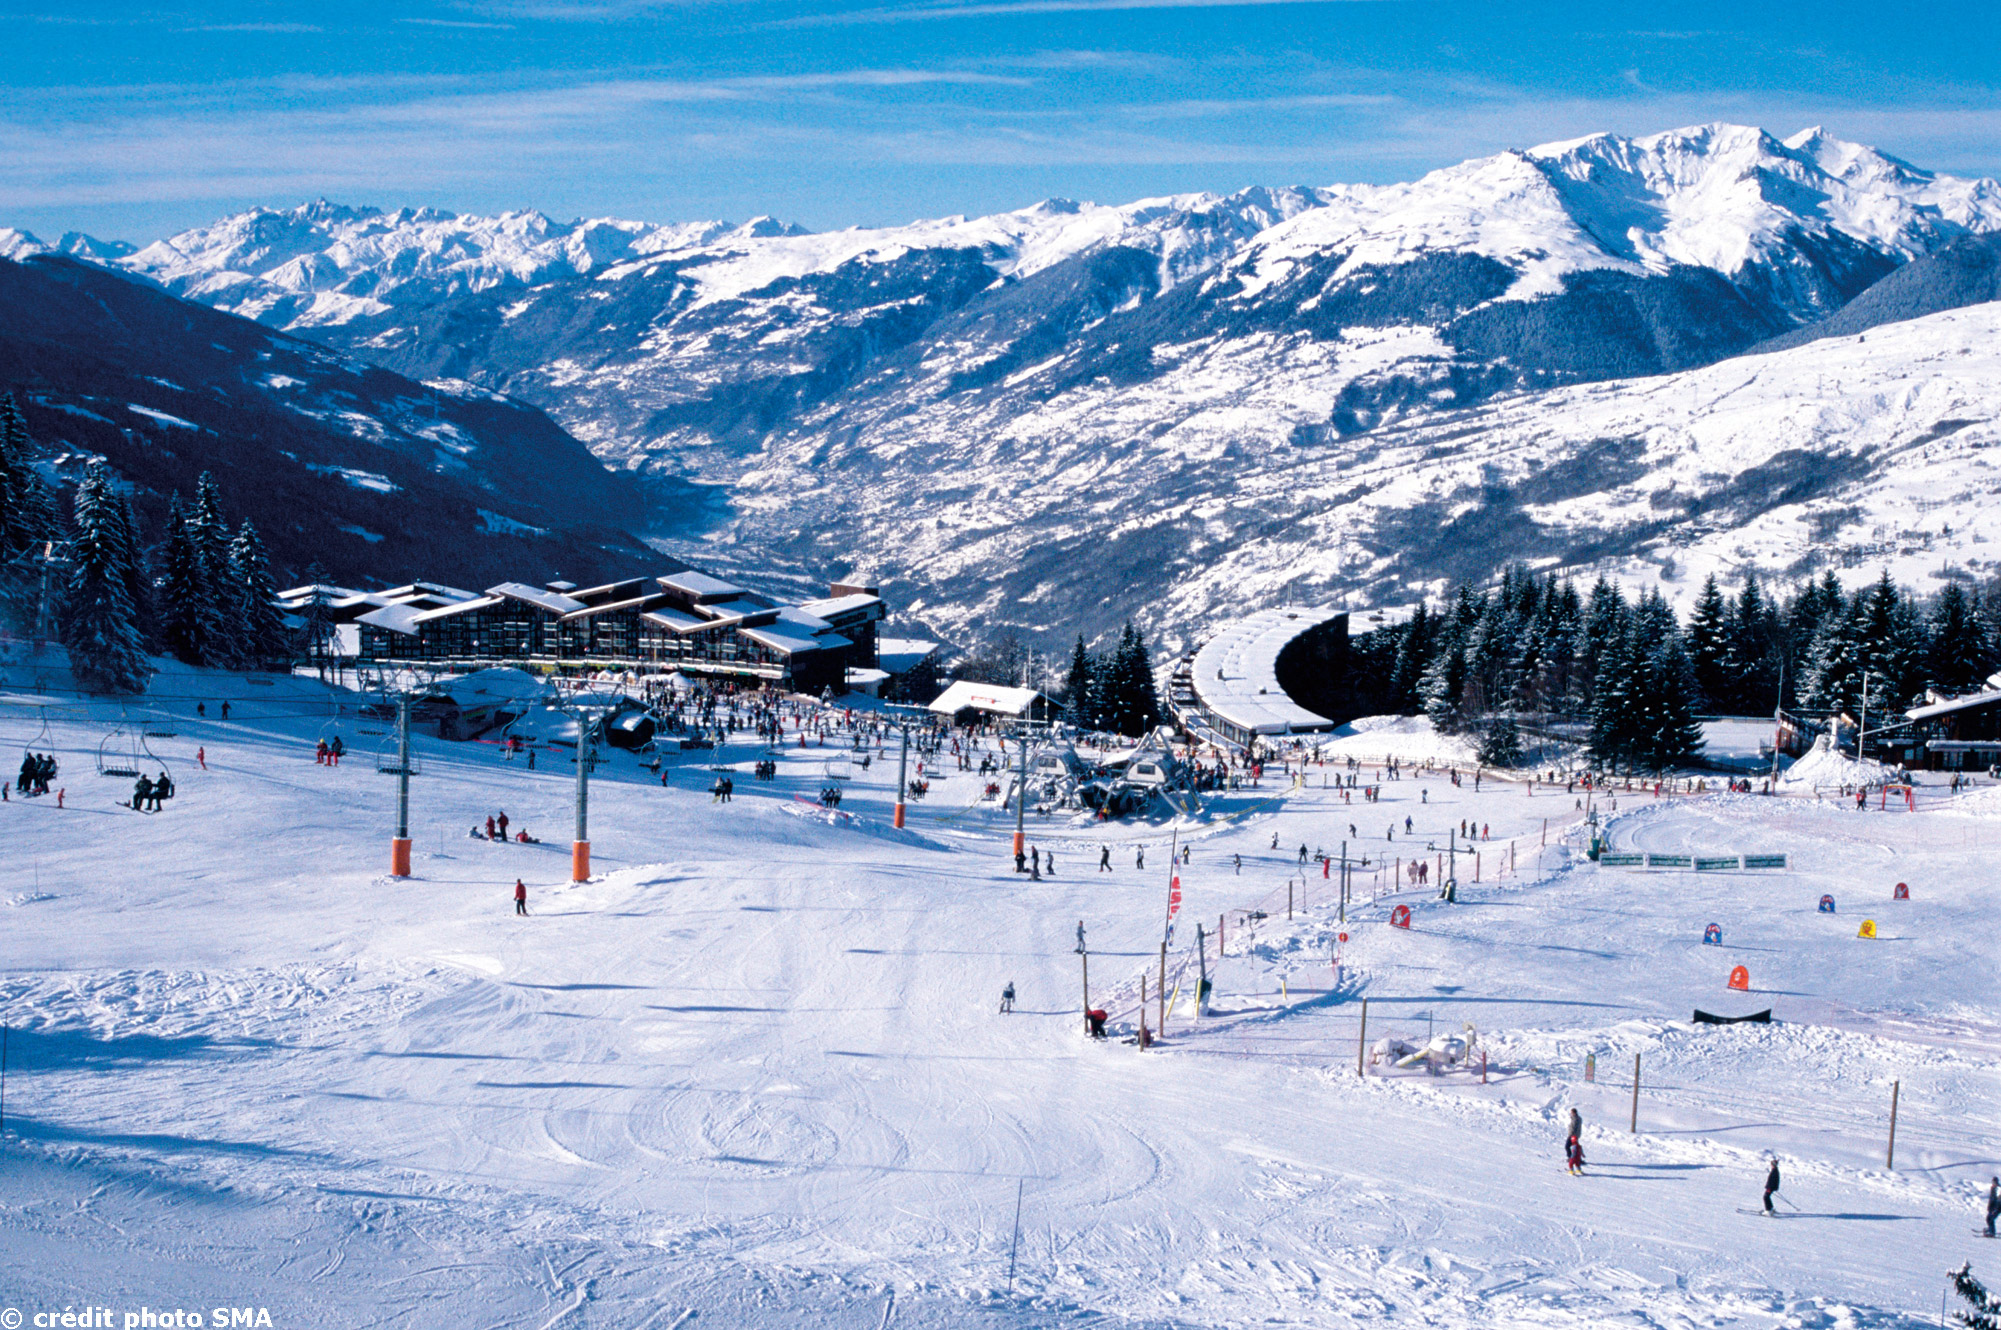 Первый горнолыжный курорт. Лез-АРК-ла-Плань (les Arcs la Plagne), Франция. Альпы Франция горнолыжный курорт. Курорты Франции горнолыжные Мэрибель. Лезарк лыжный курорт.